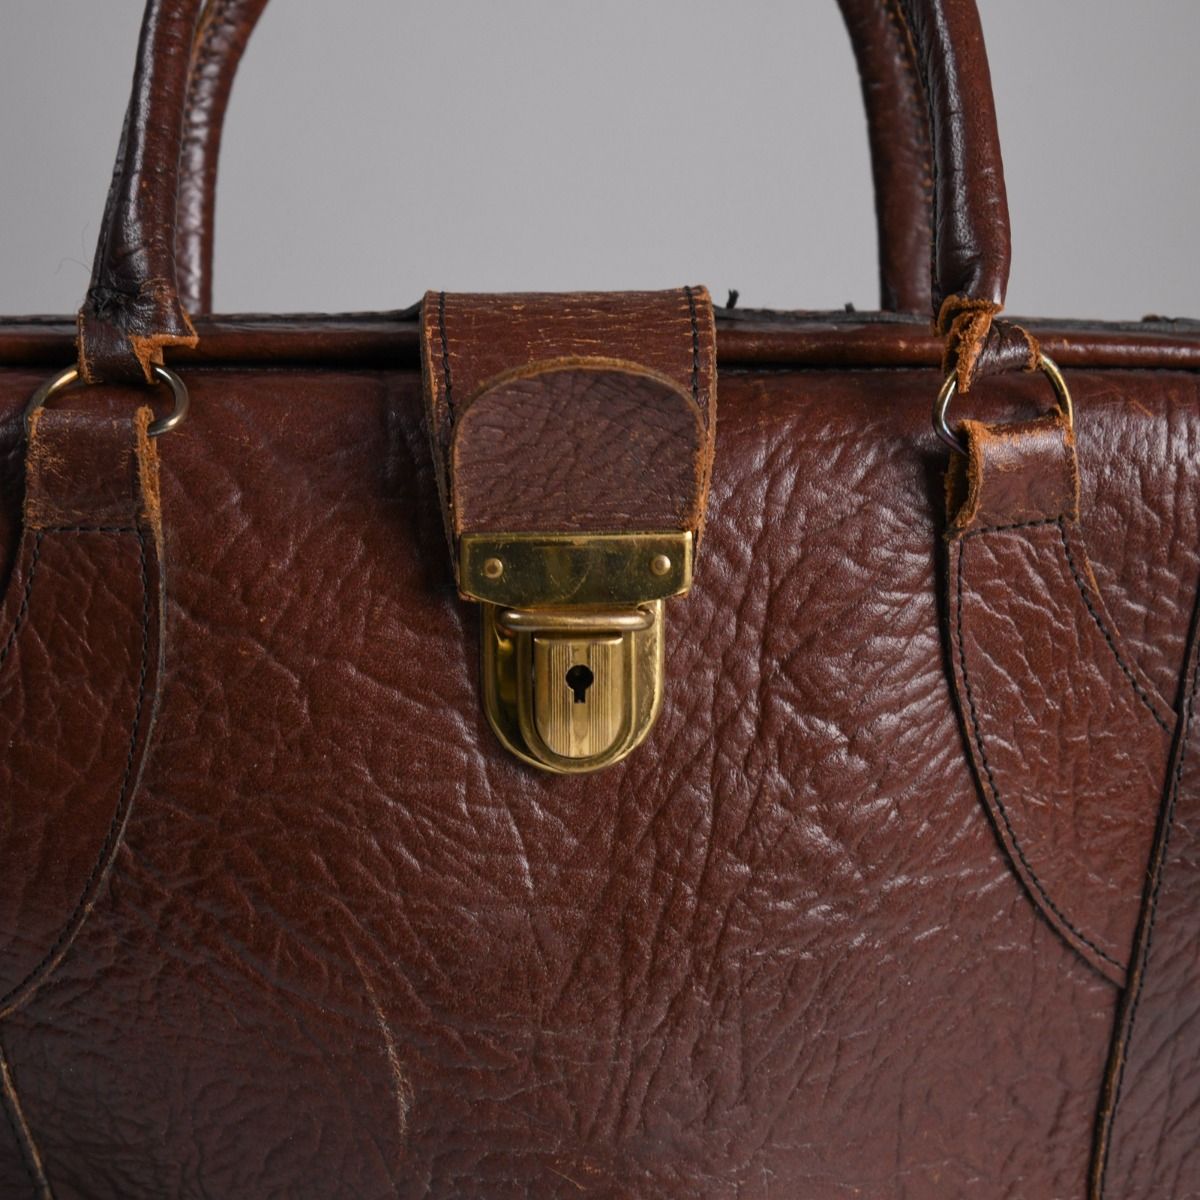 Vintage Leather Hand Bag